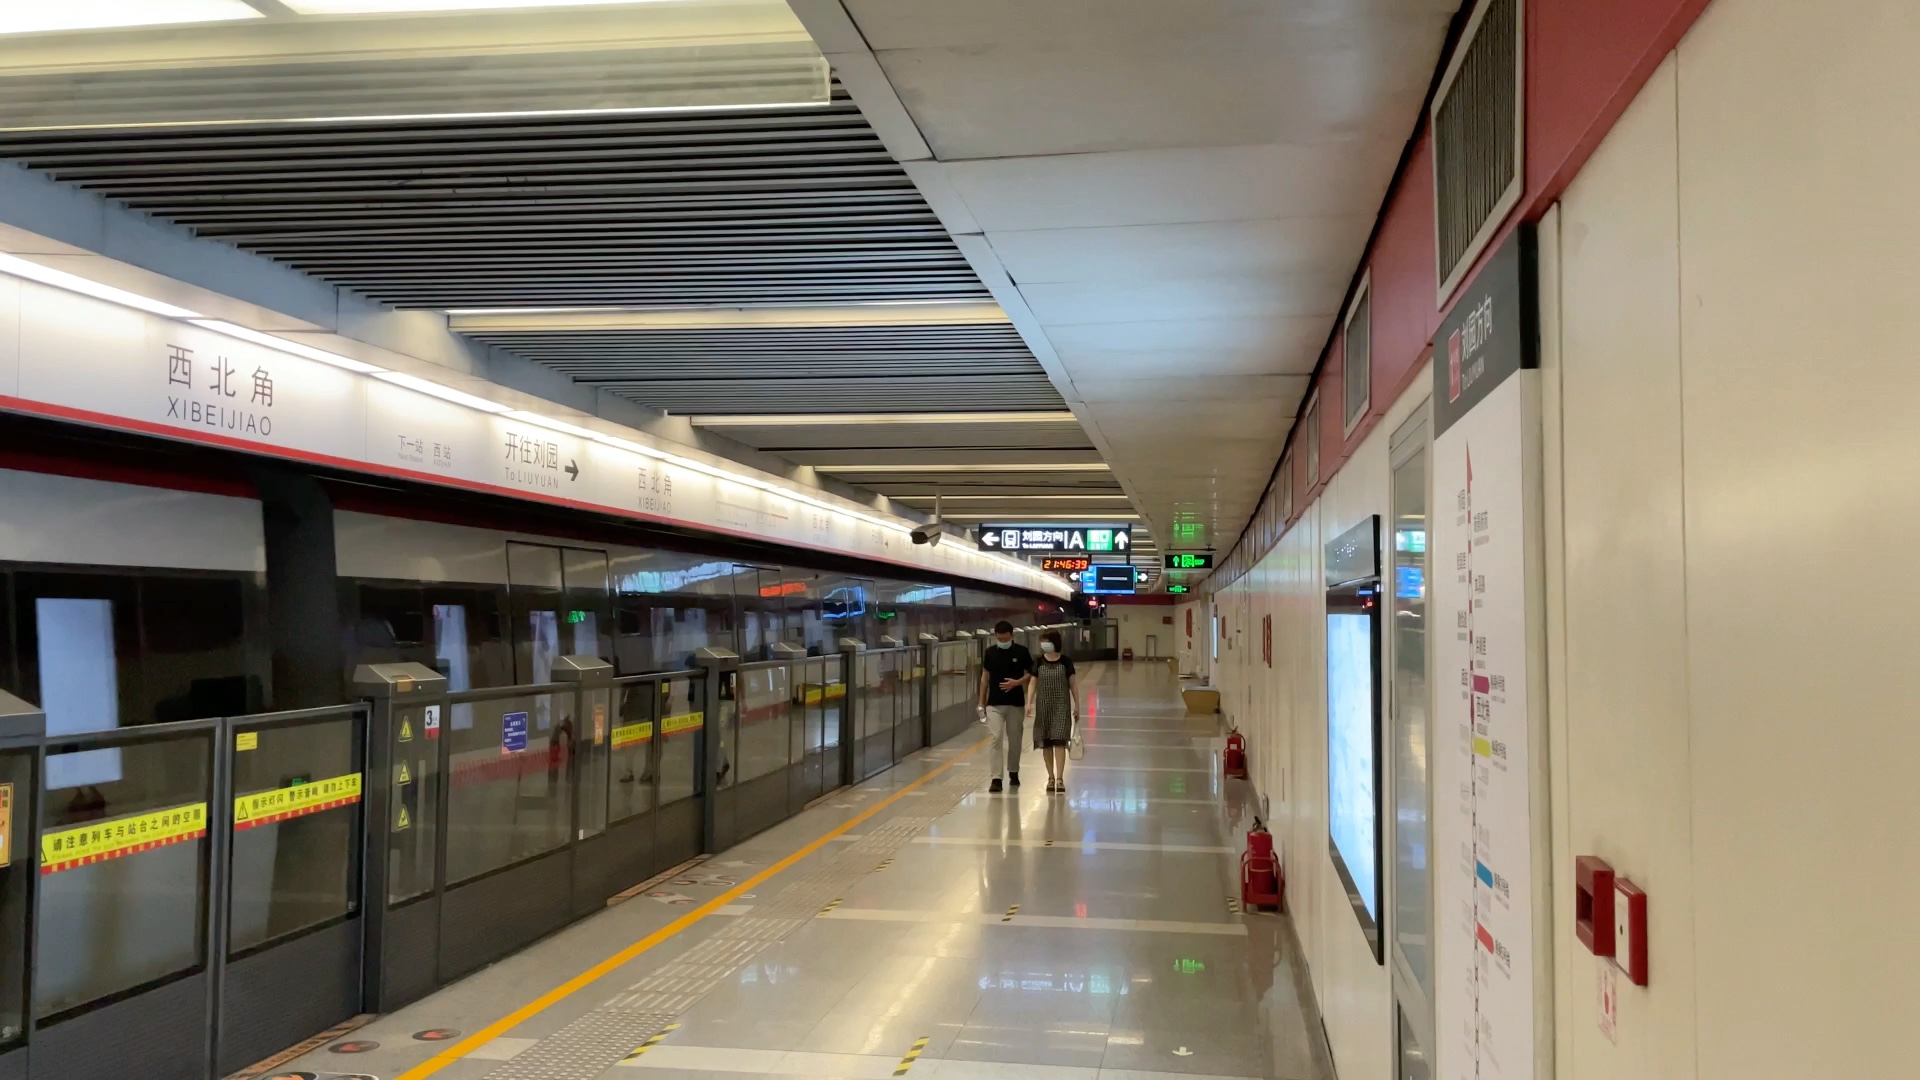 天津地铁站图片高清图片